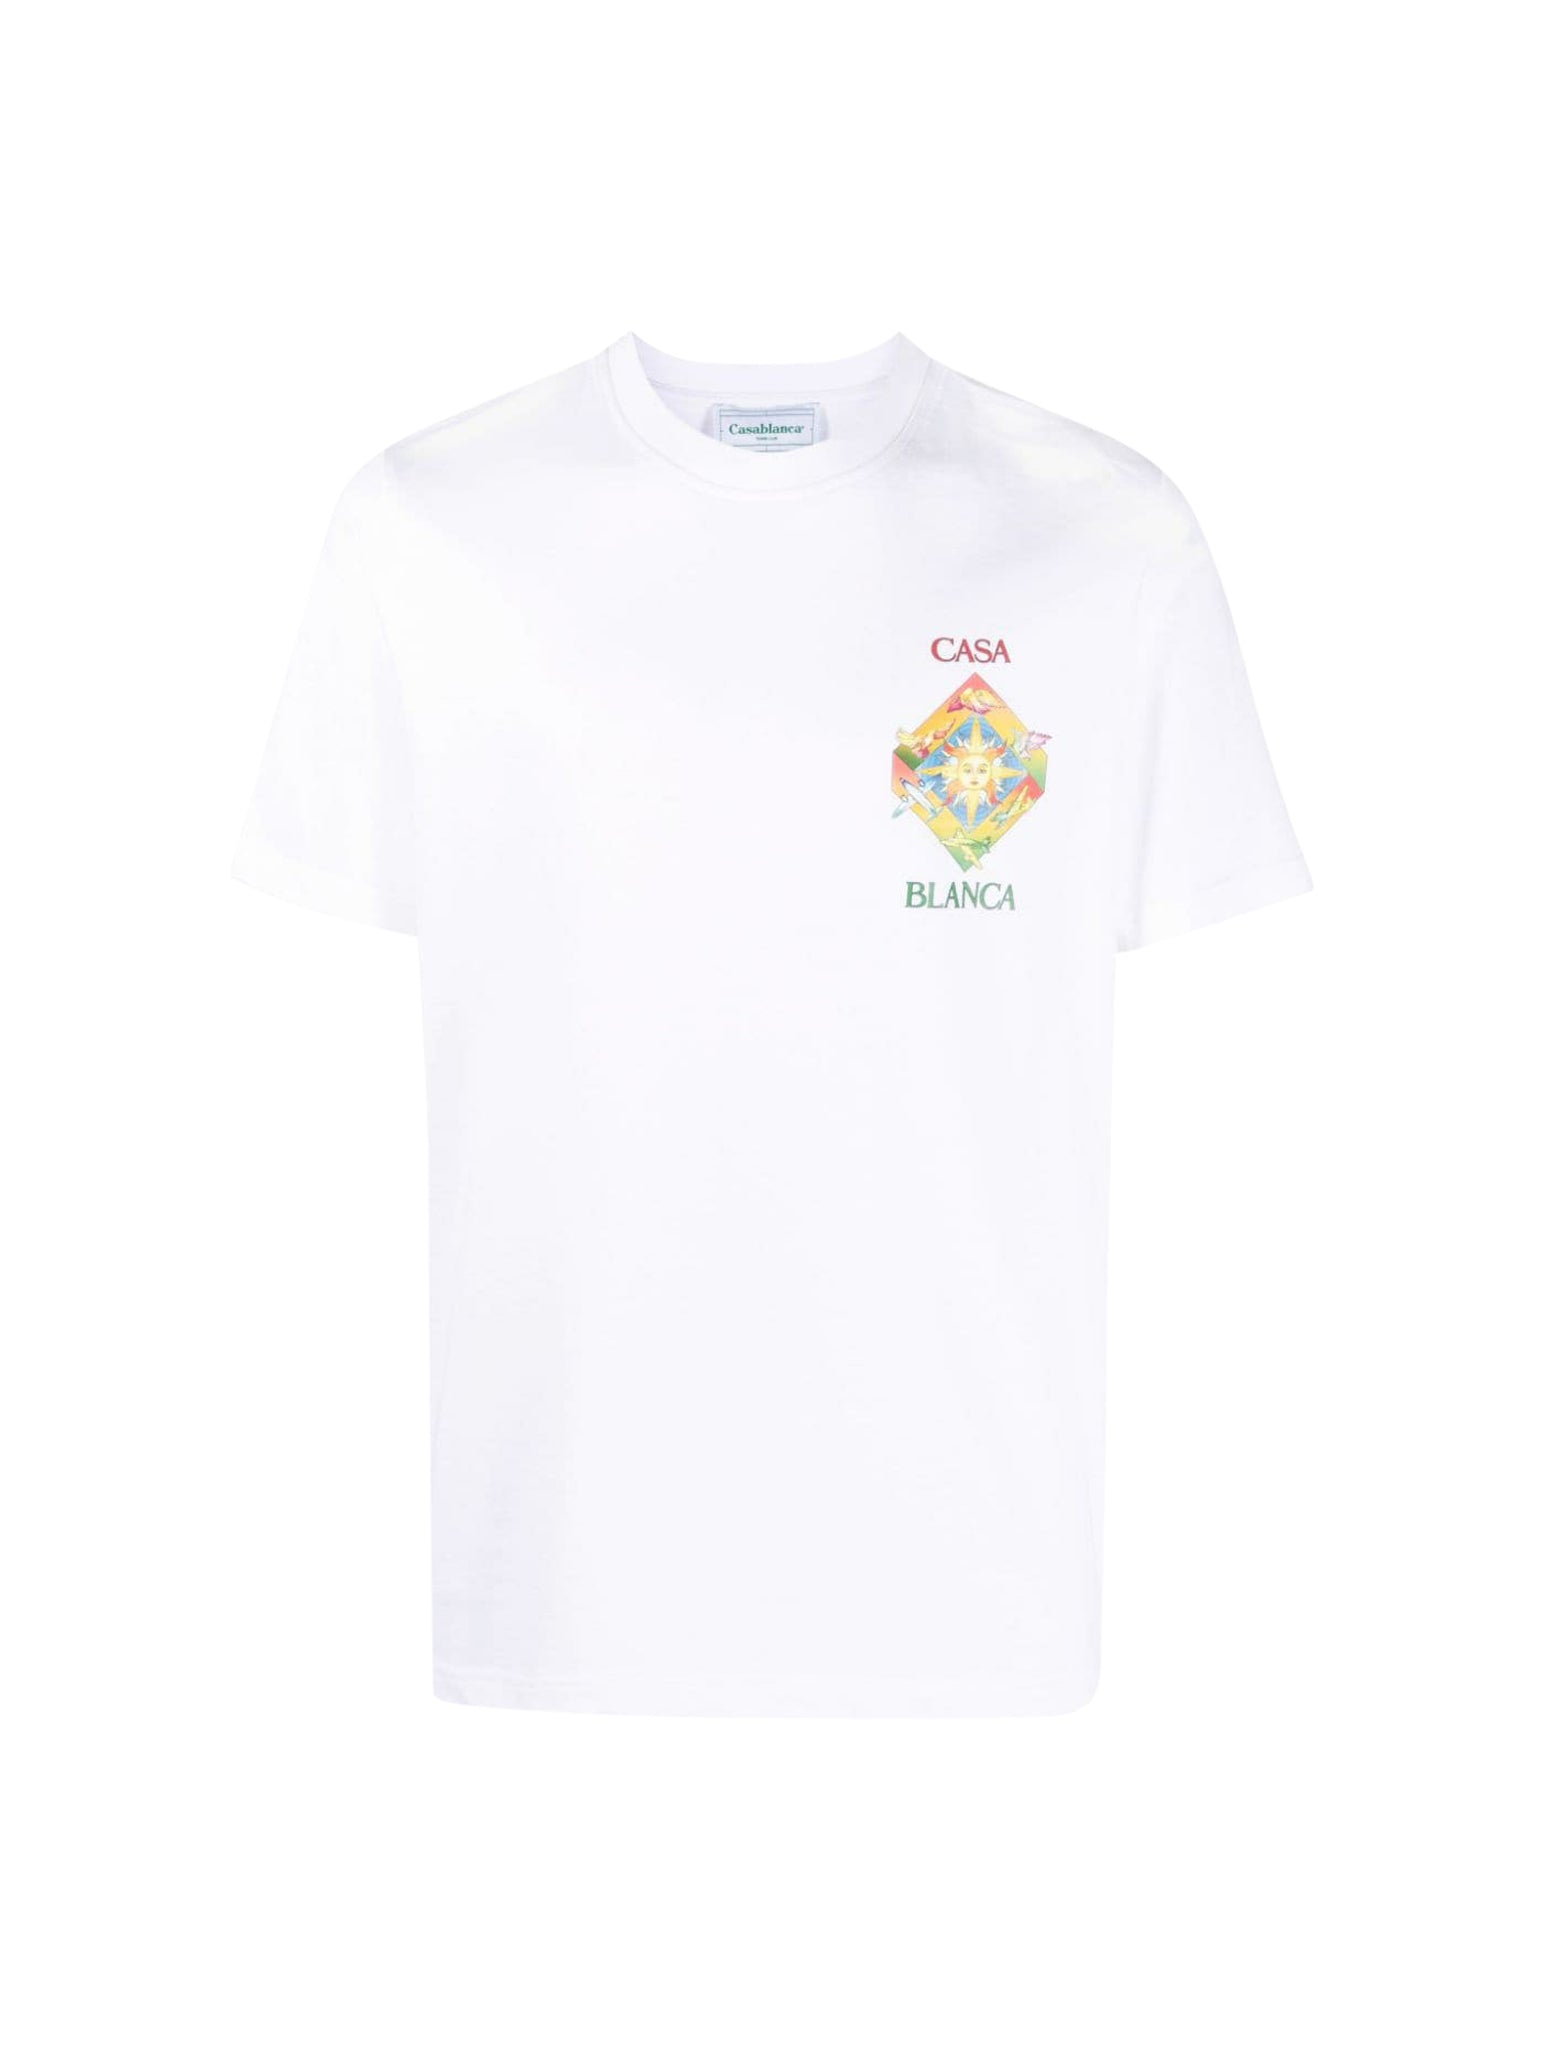 Les Elements cotton T-Shirt